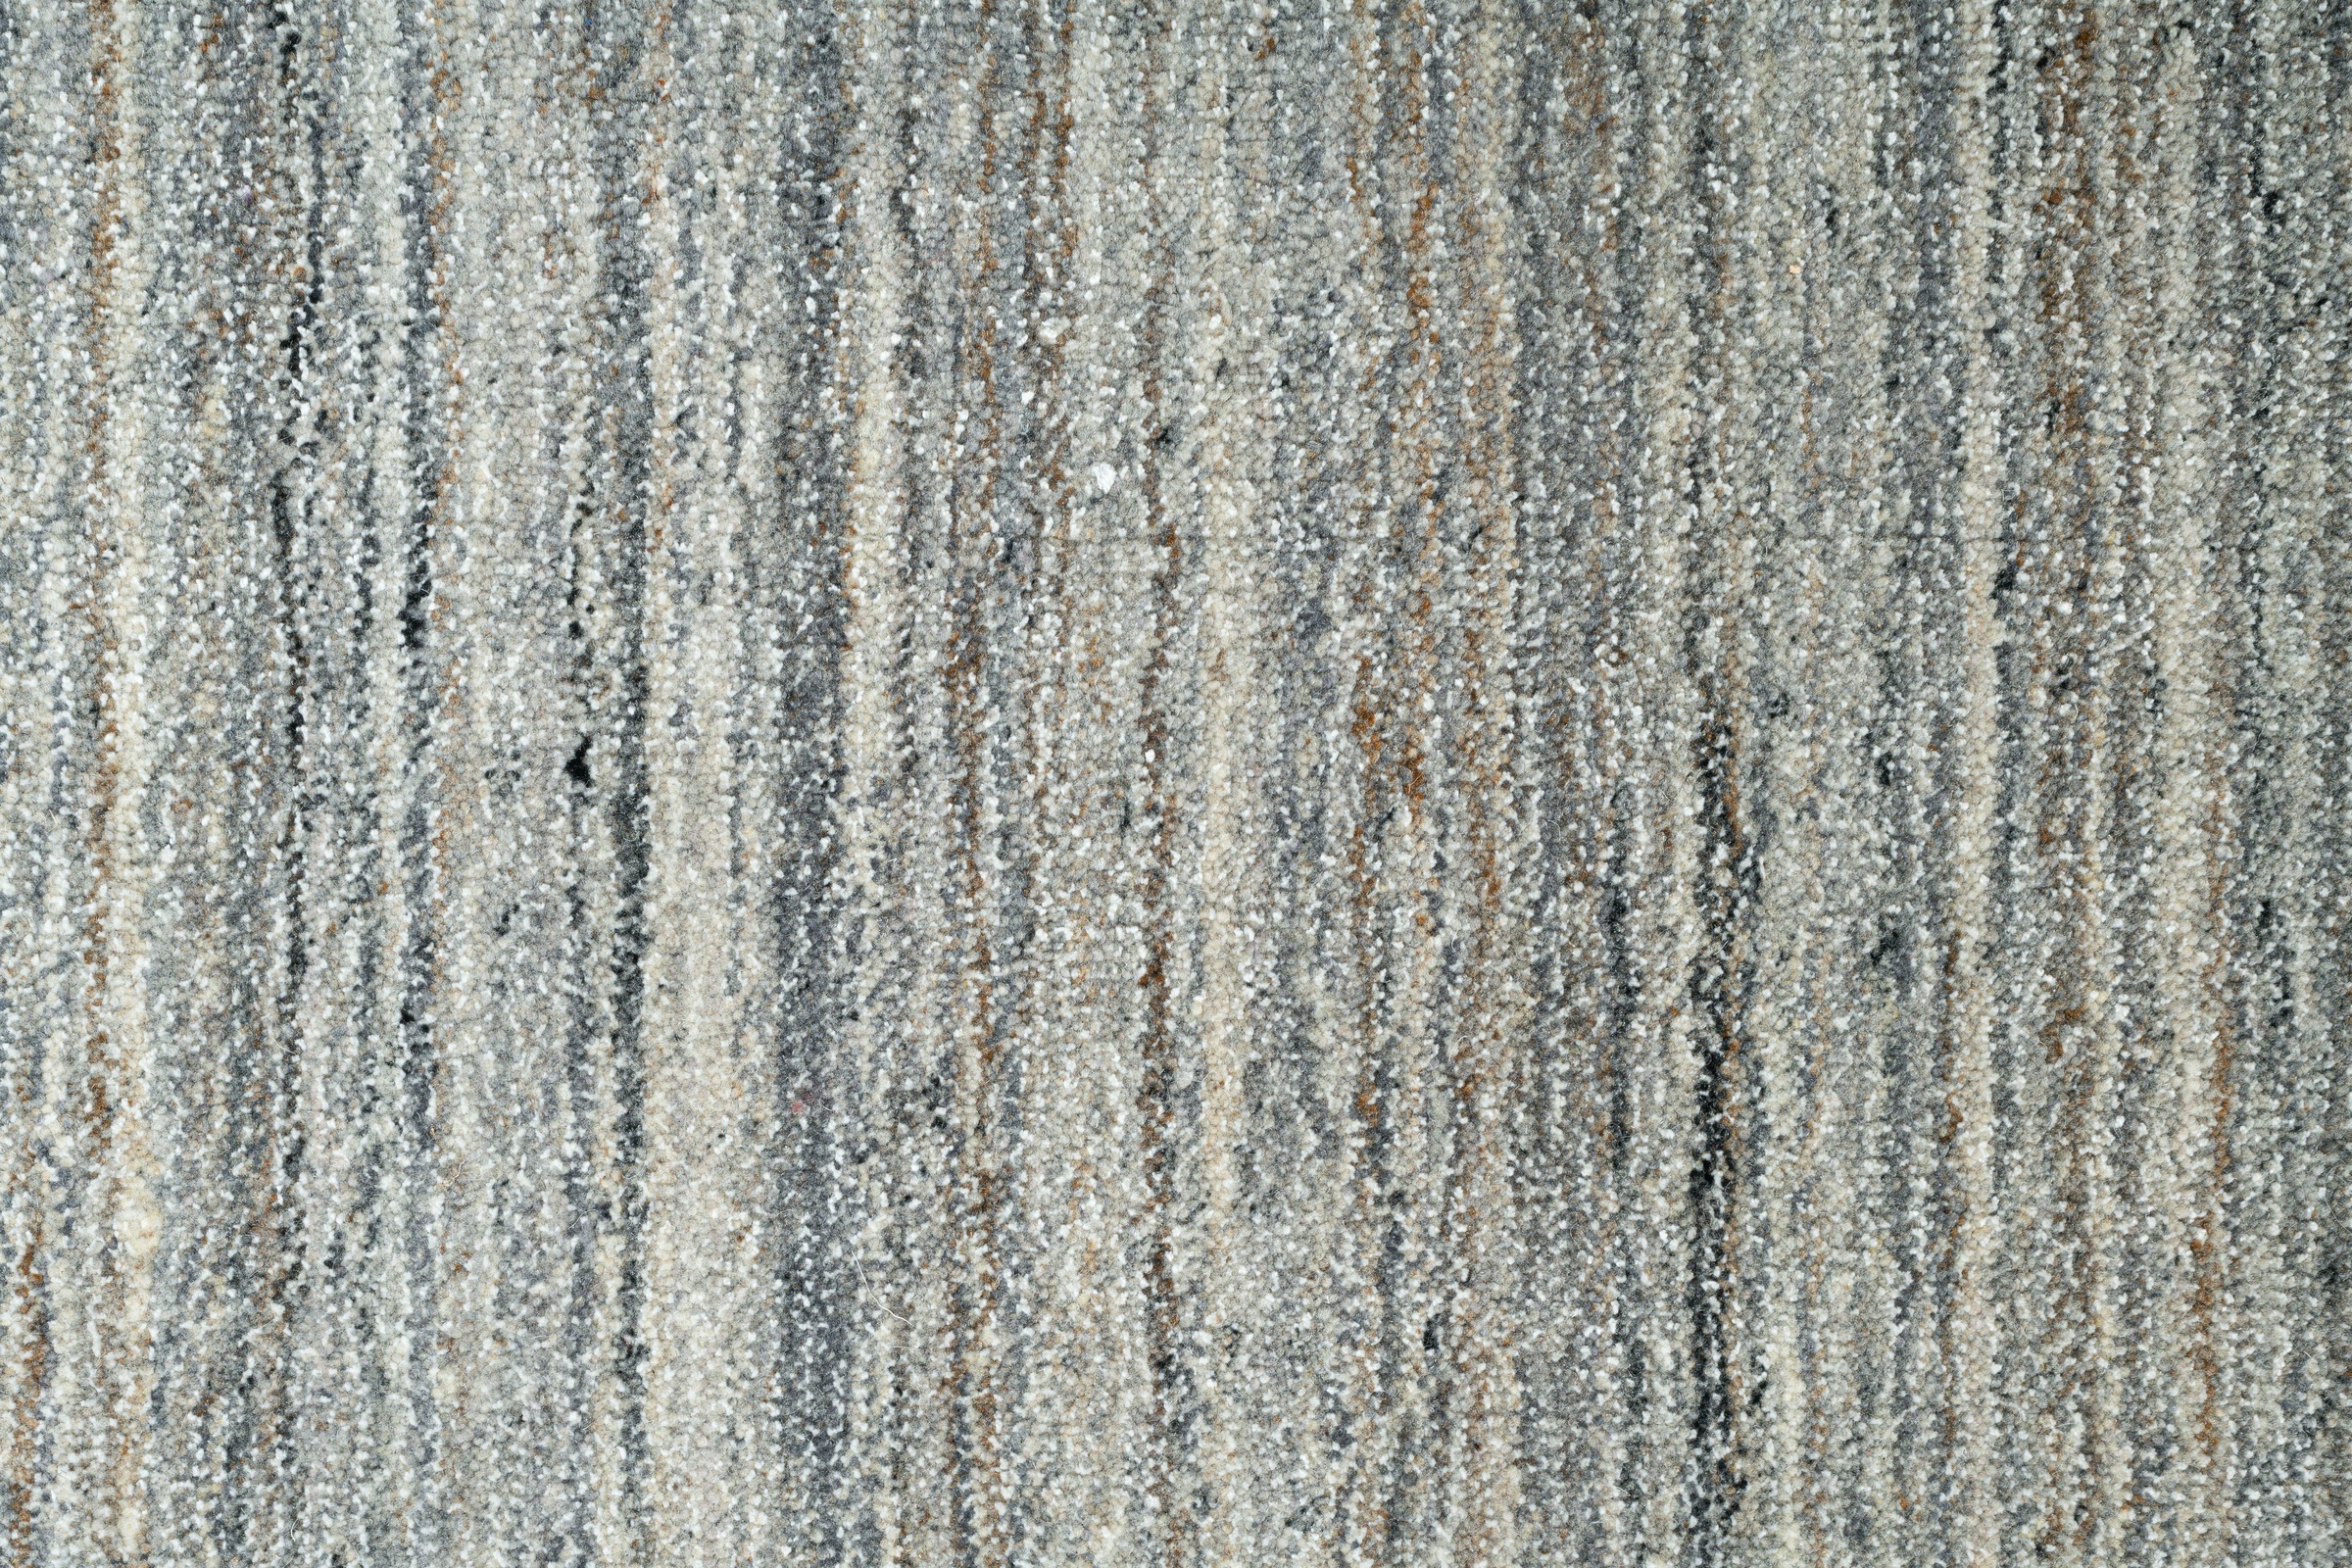 THEKO Teppich »San Diego«, rechteckig, handgewebt, 60% Wolle, Knüpfoptik, meliert, leichter seidiger Glanz